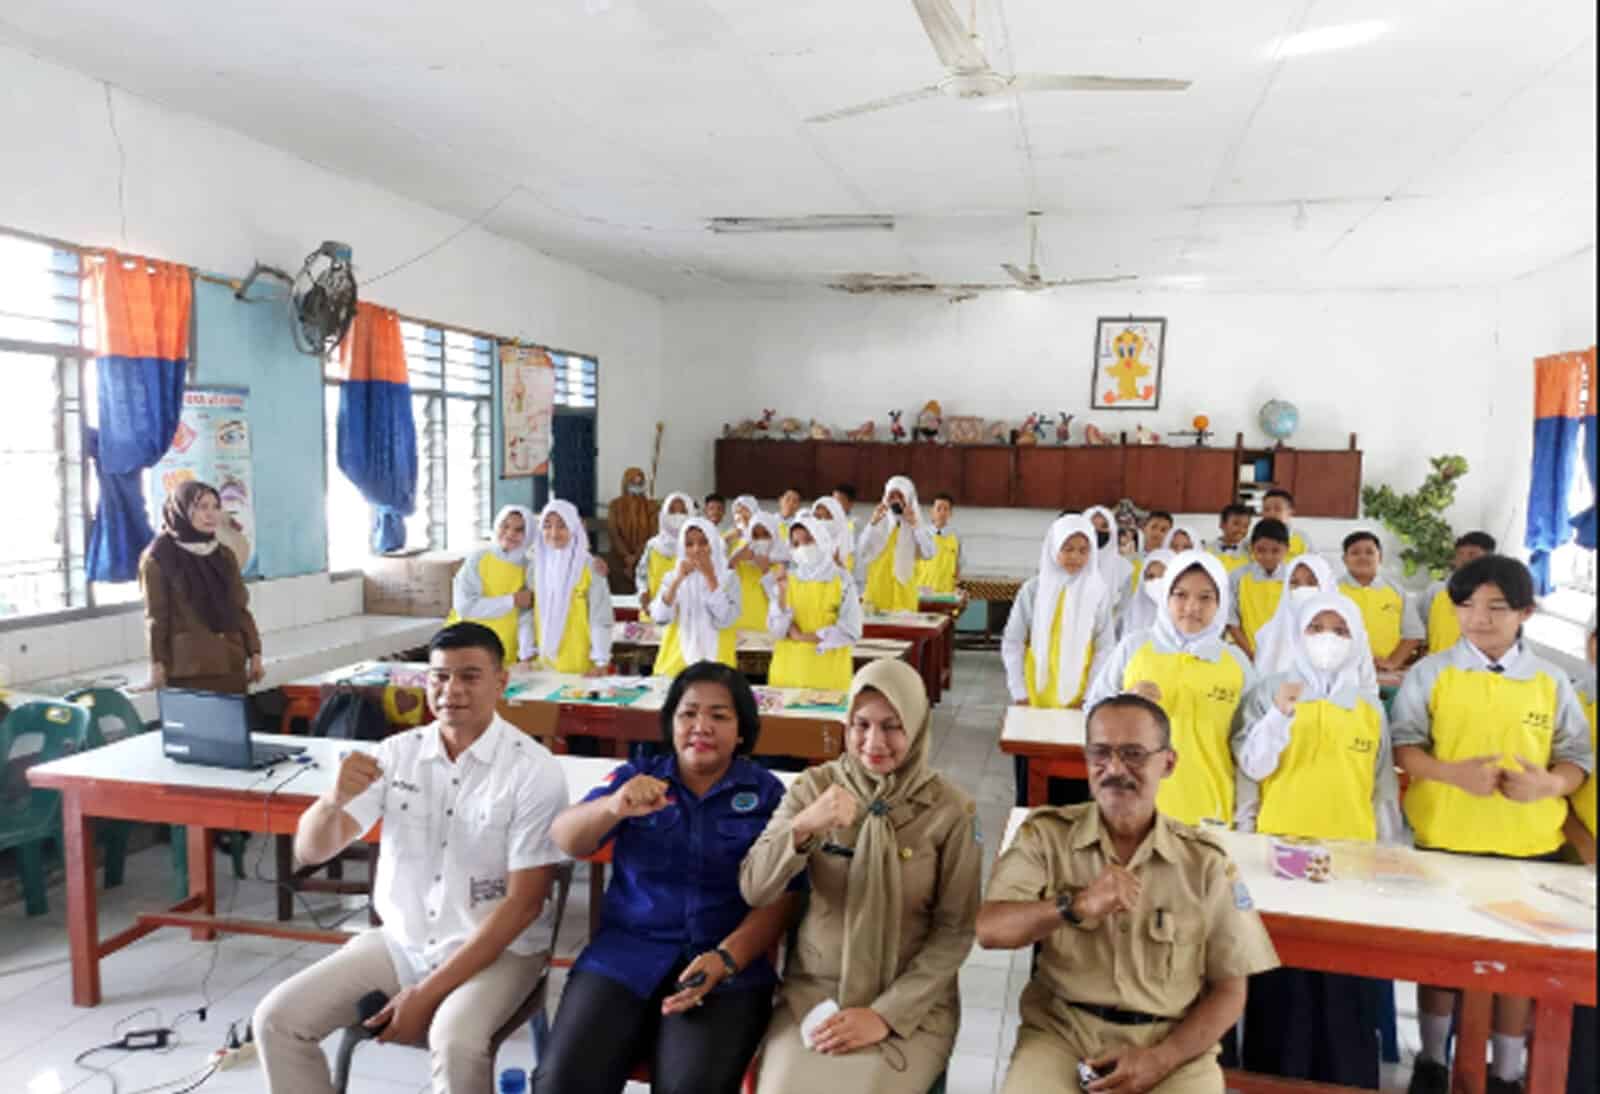 Kepala BNN Kota Binjai Menjadi Narasumber di Kegiatan Fasilitasi Pencegahan dan Penanggulangan Narkoba Bagi Anak Sekolah di Sekolah SMP Negeri 6 Kota Binjai.